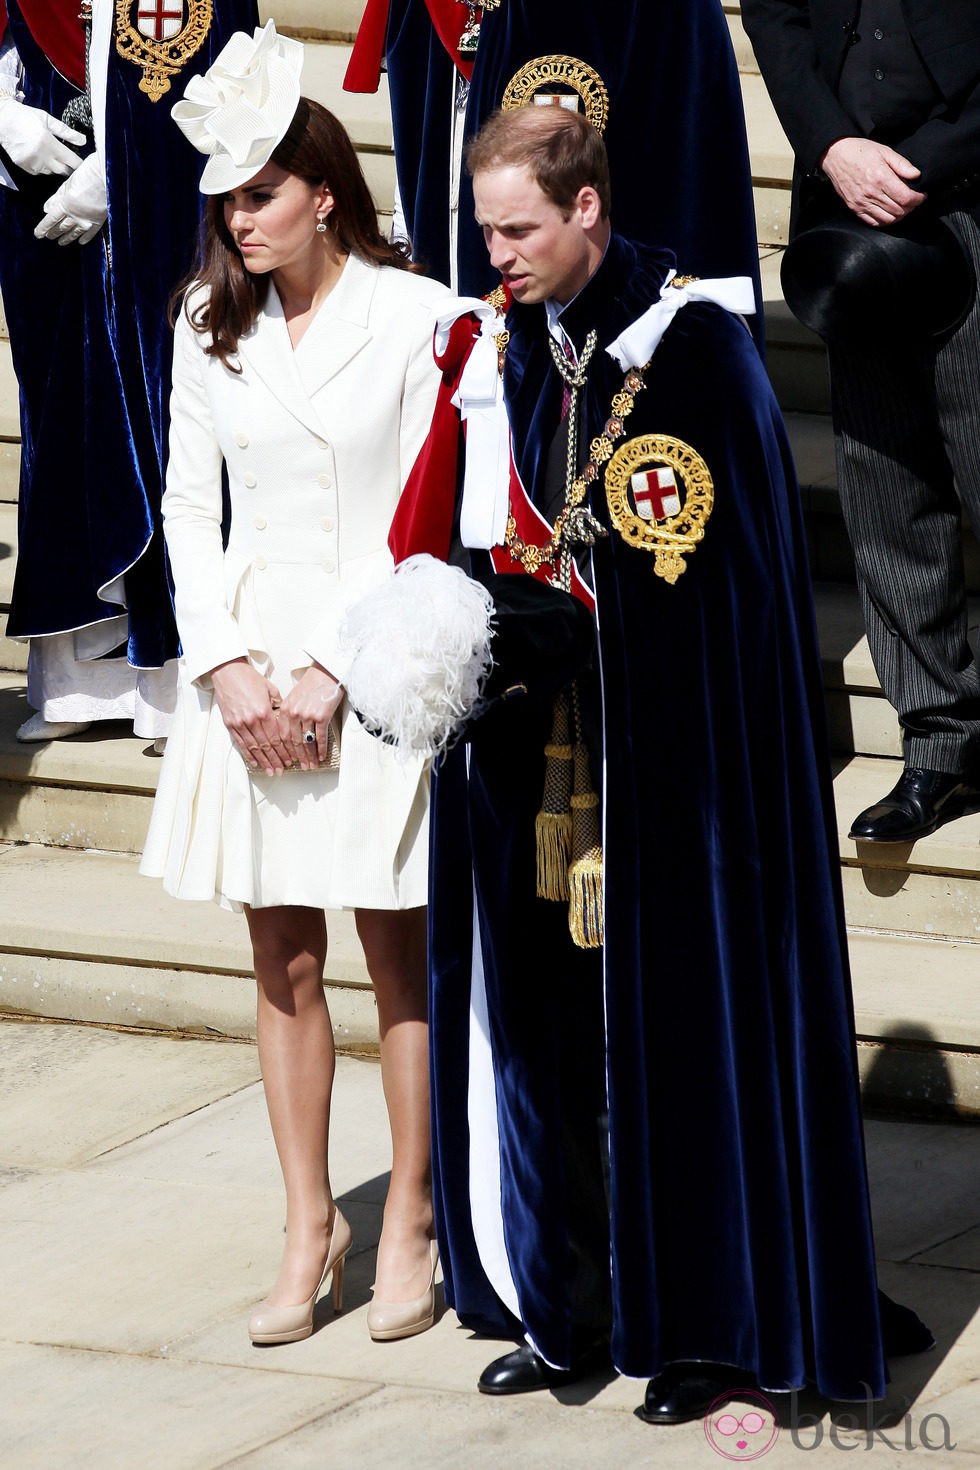 Los Duques de Cambridge en la ceremonia de la Orden de la Jarretera